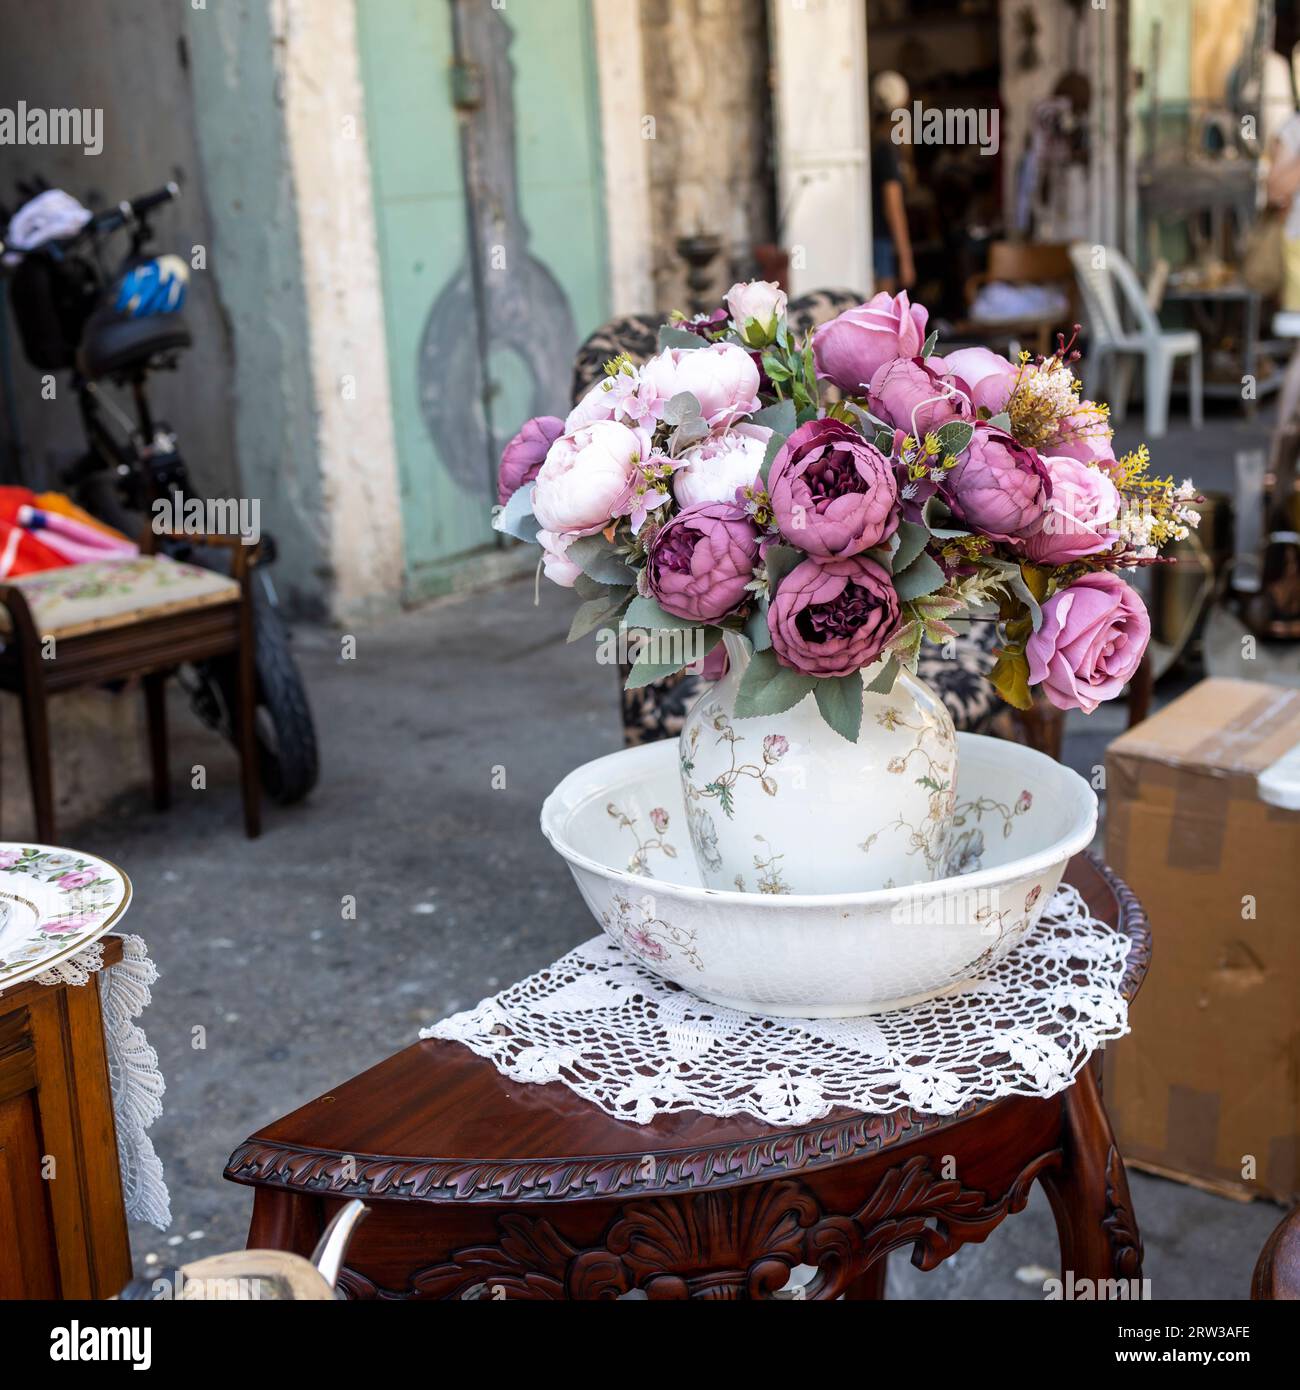 Ein Blumenstrauß aus künstlichen Rosen, Hortensien, Pfingstrosen, Gänseblümchen in einem weißen Keramikkrug auf einem Flohmarkt auf einem Tisch. Stockfoto